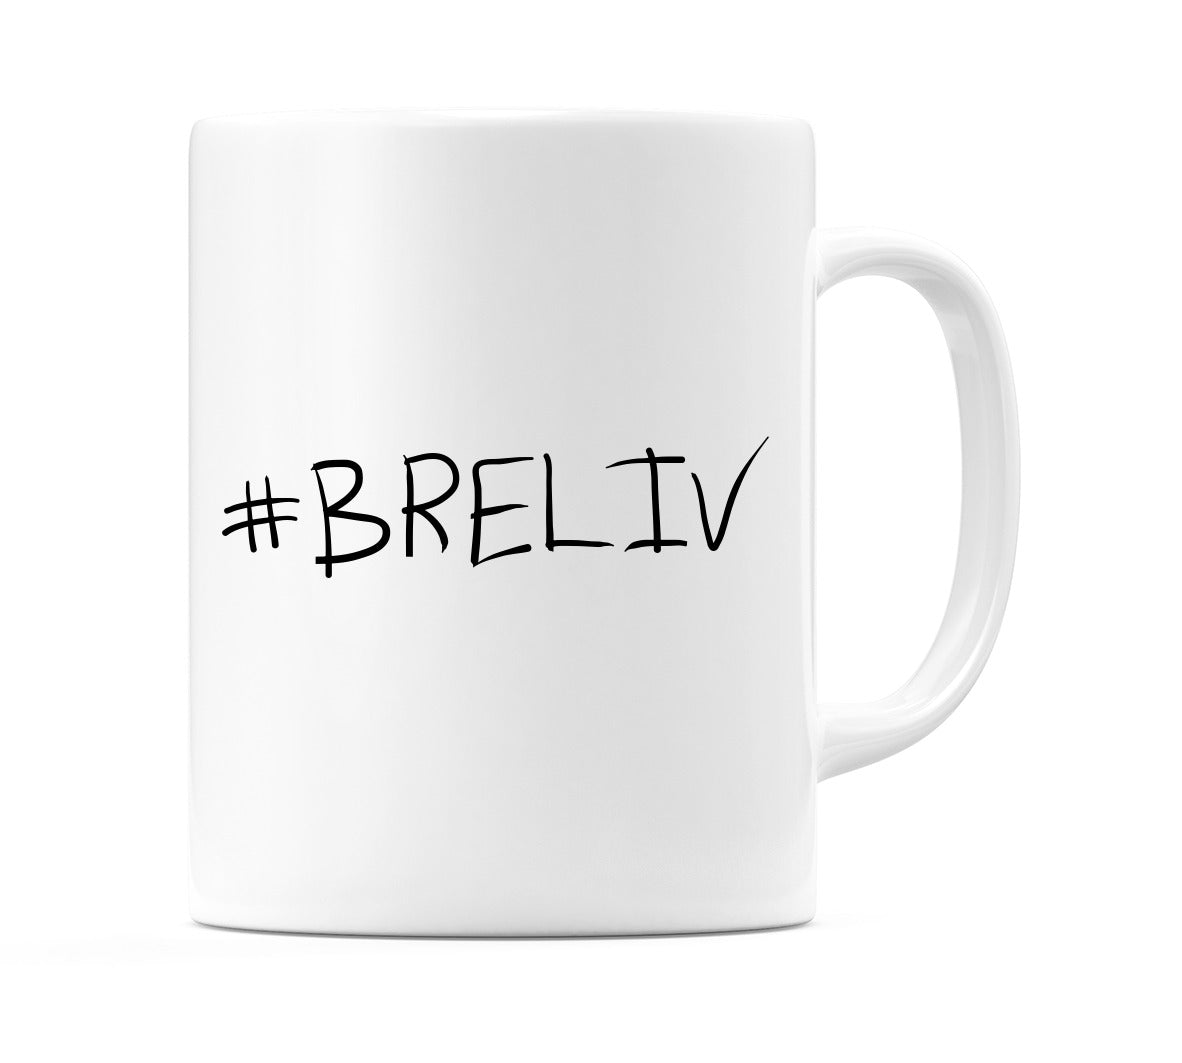 #BRELIV Mug